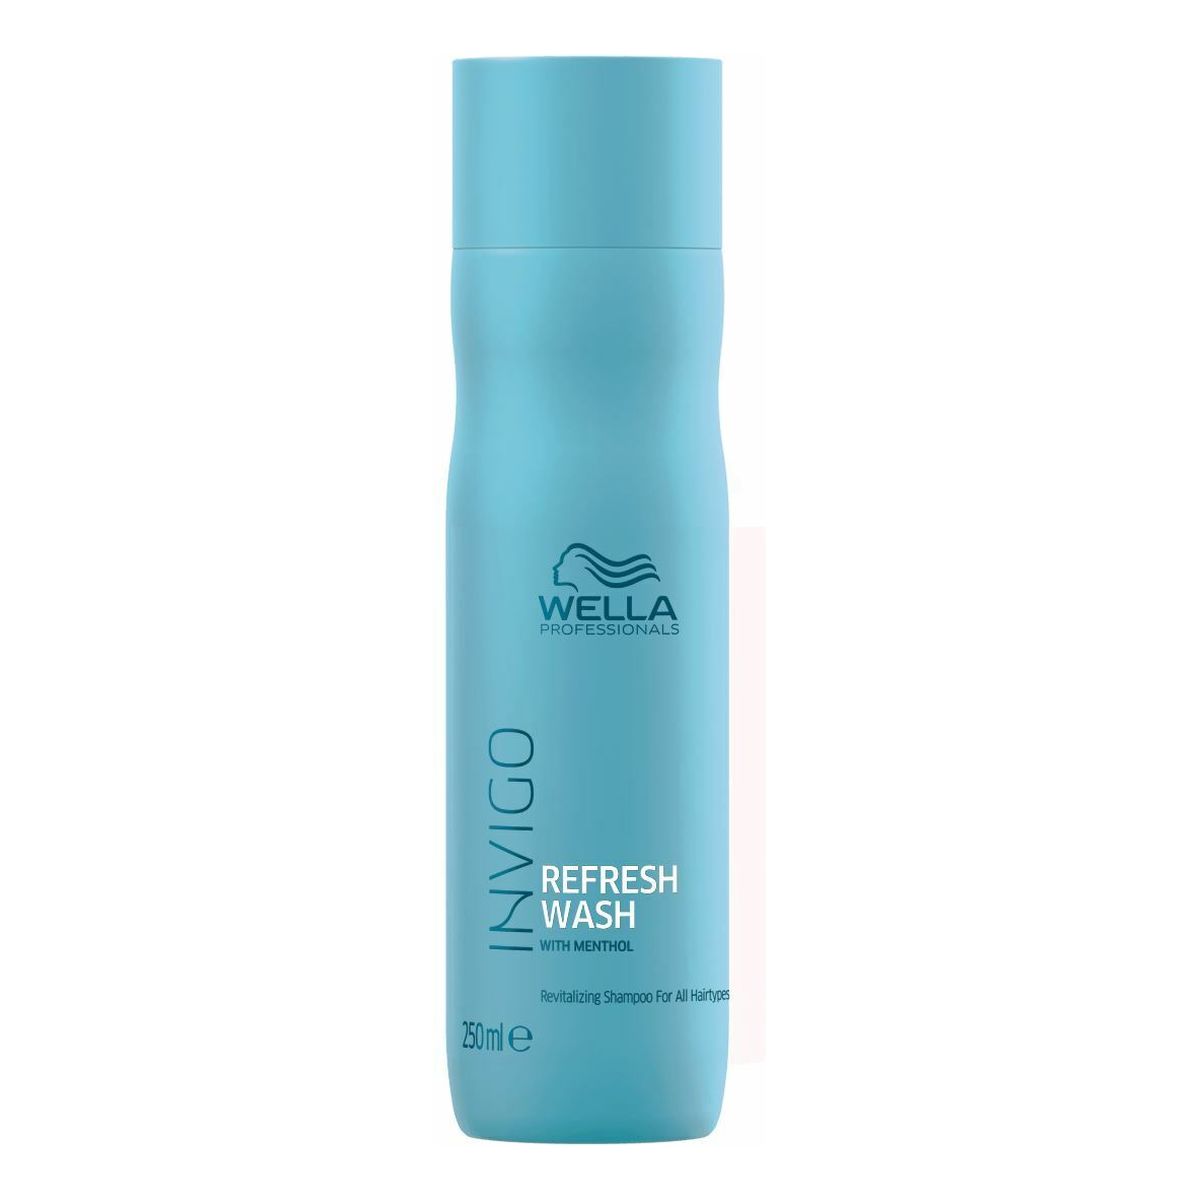 Wella Professionals Invigo refresh wash revitalizing shampoo odświeżający szampon do włosów z mentolem 250ml